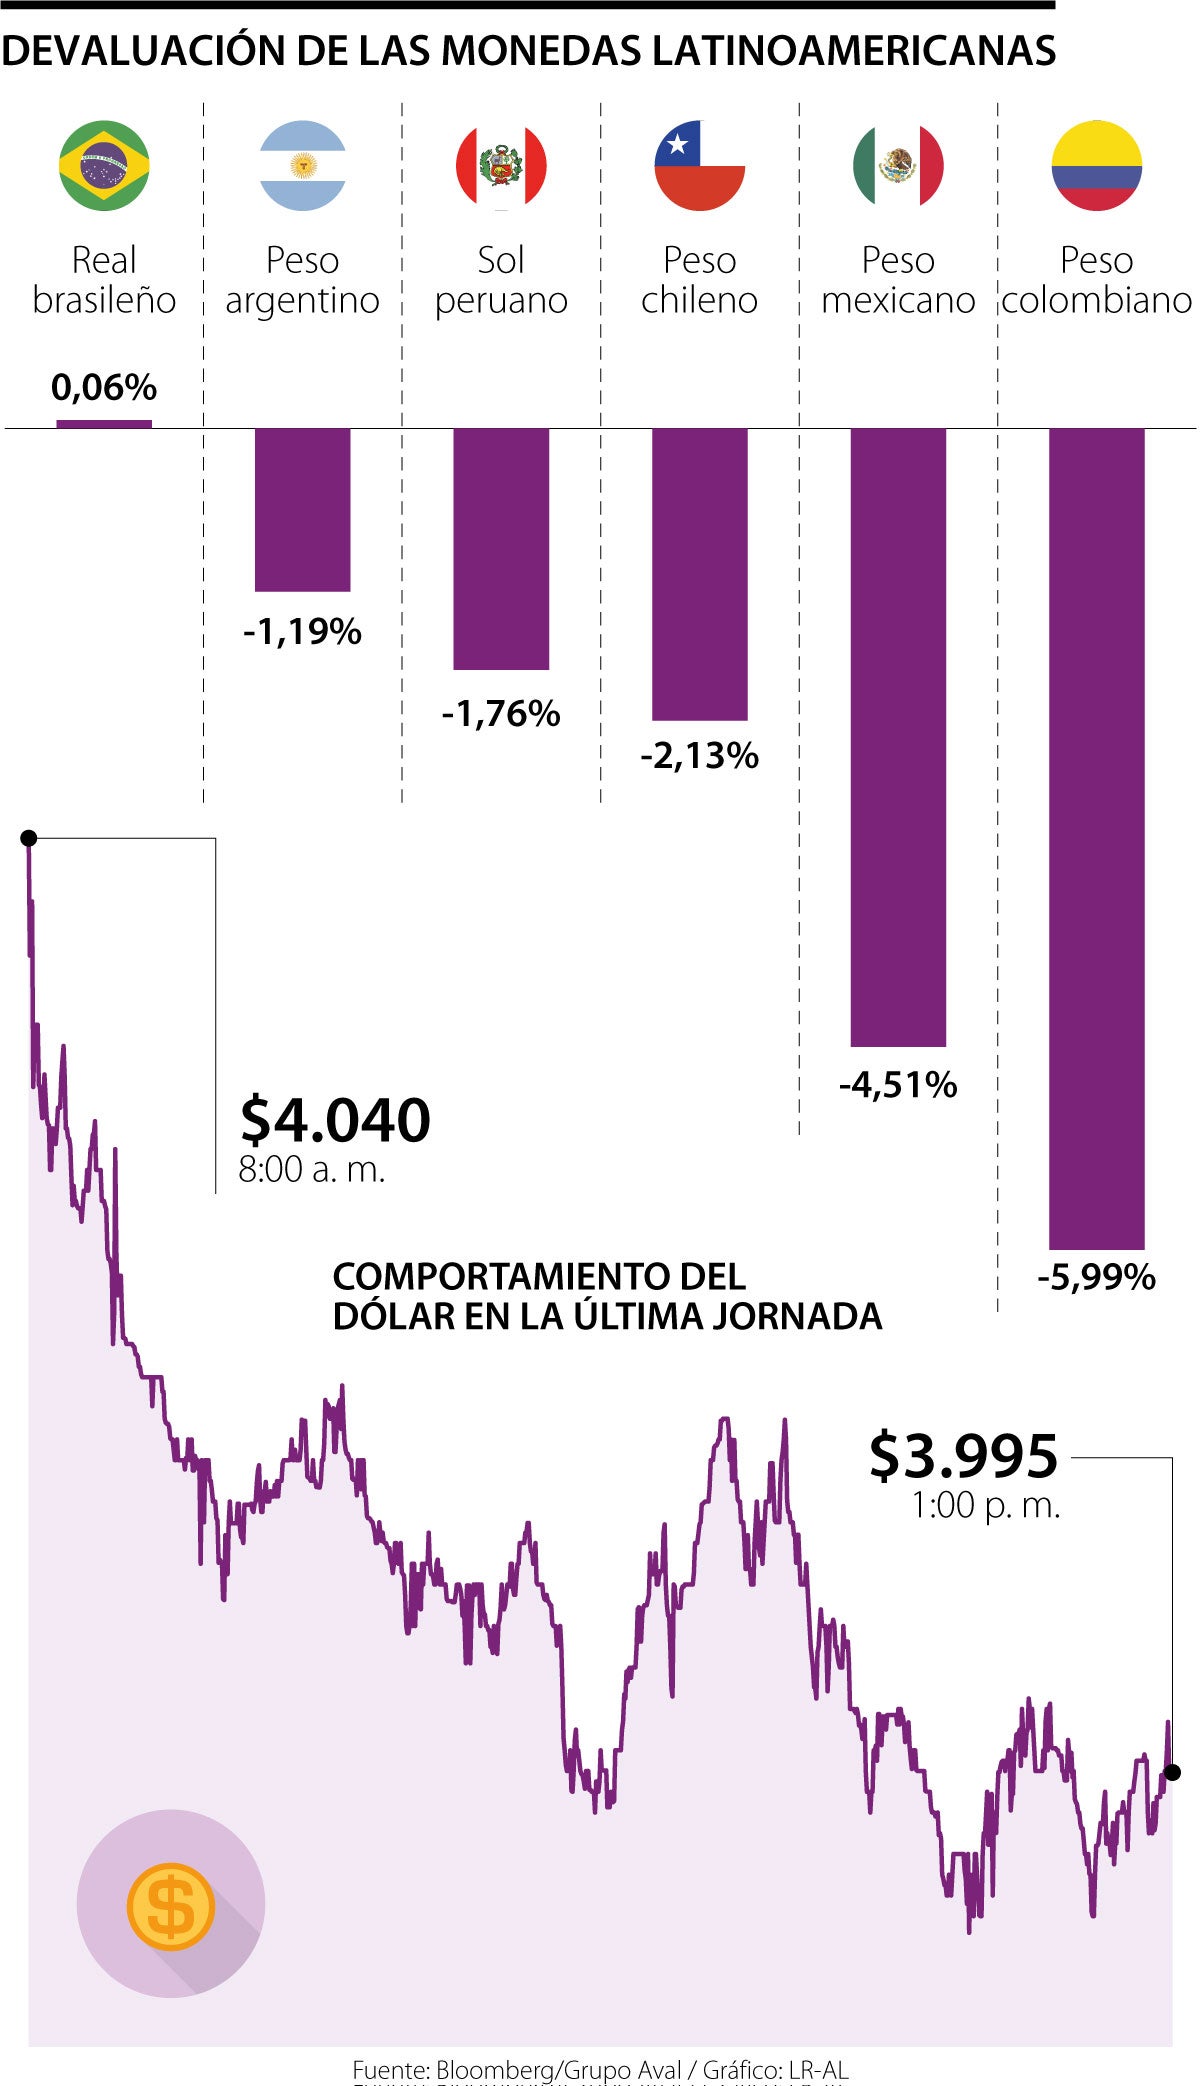 Peso colombiano es la moneda más devaluada de Latinoamérica en el último mes